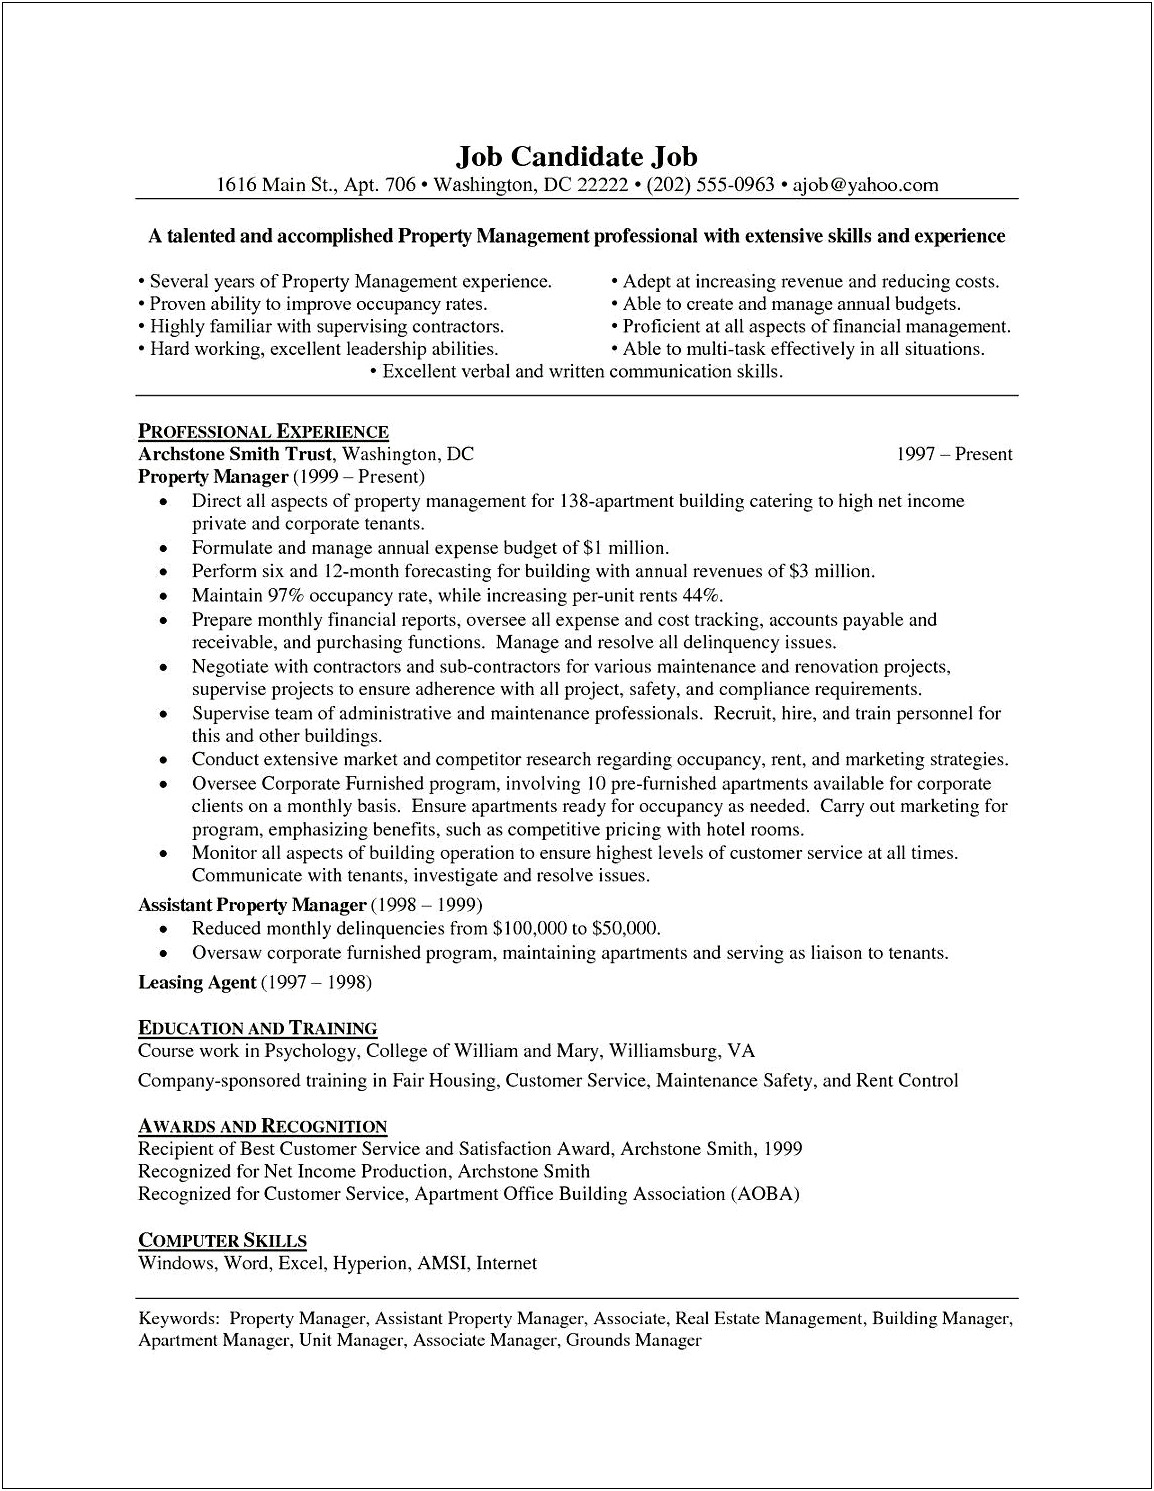 Sample Resume For Property Management Job